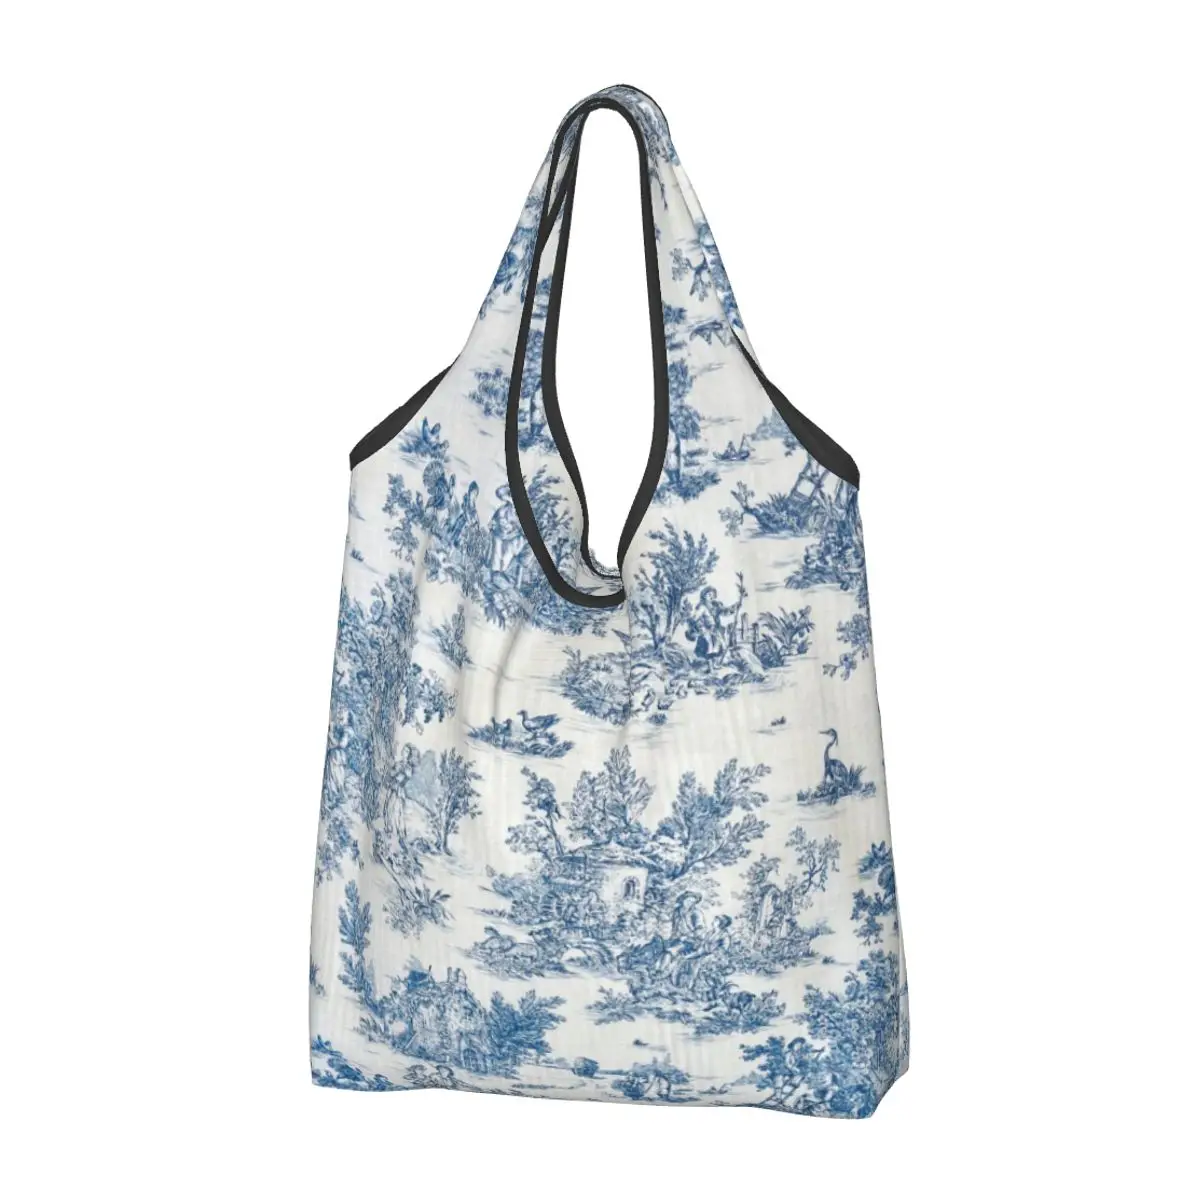 

Французская темно-синяя сумка-тоут из ткани Jouy для покупки продуктов, женская сумка-шоппер на плечо с милыми цветами, вместительные сумки